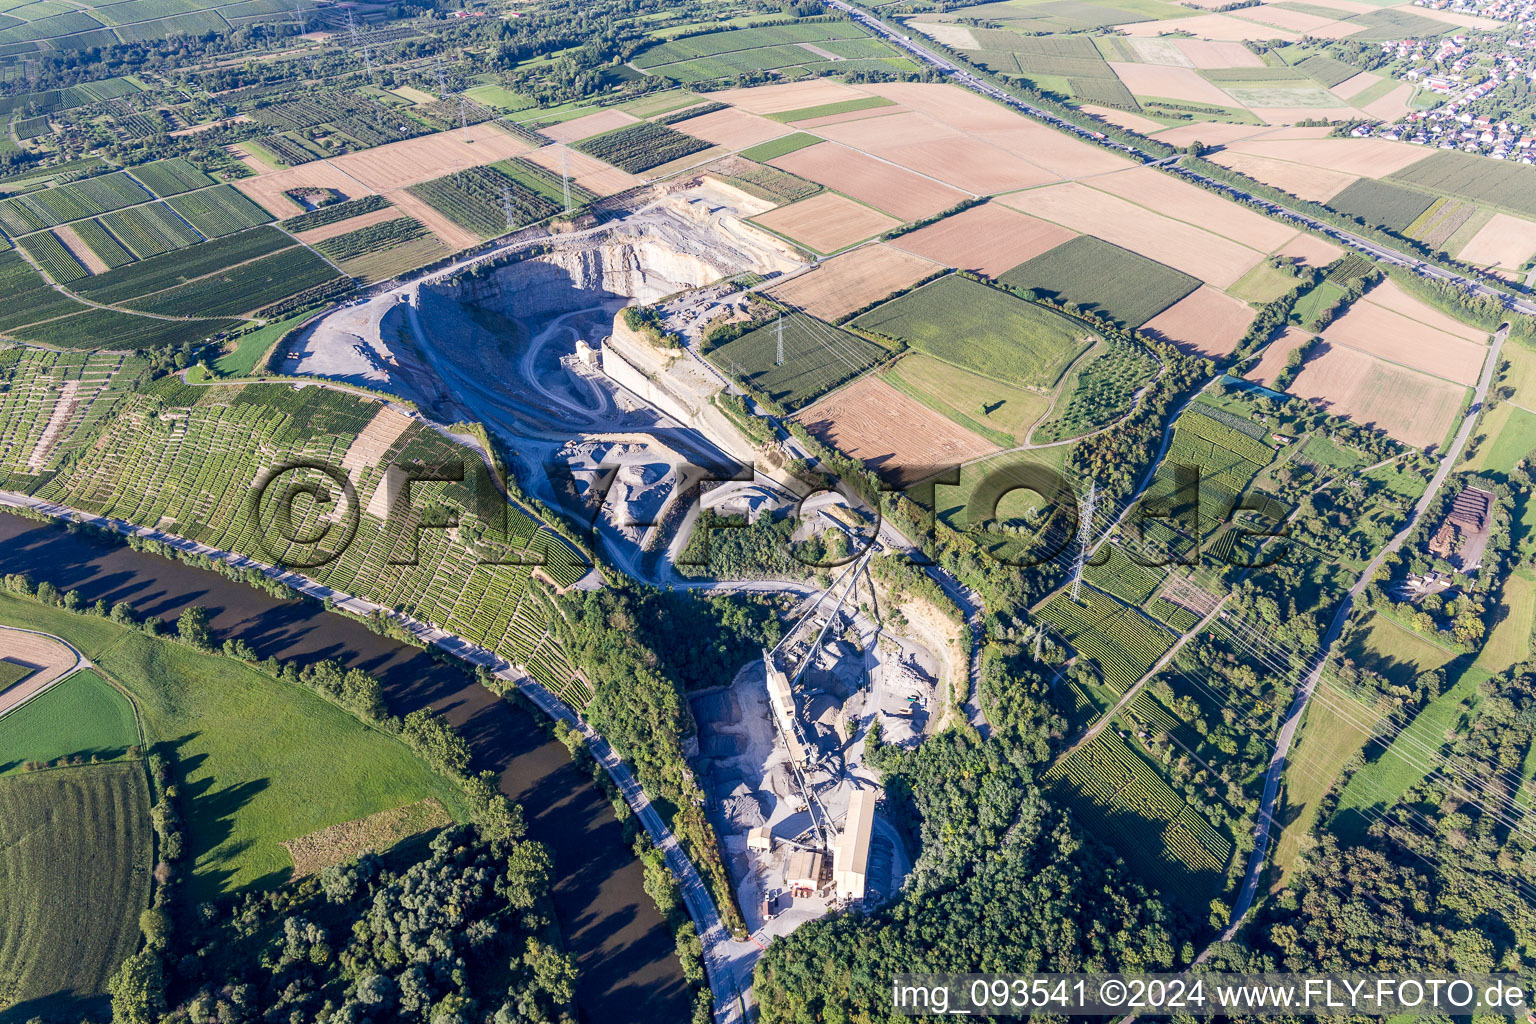 Vue aérienne de Carrière Mundelsheim pour l'extraction et l'extraction de graviers derrière les pentes des vignobles du Neckar à Mundelsheim dans le département Bade-Wurtemberg, Allemagne